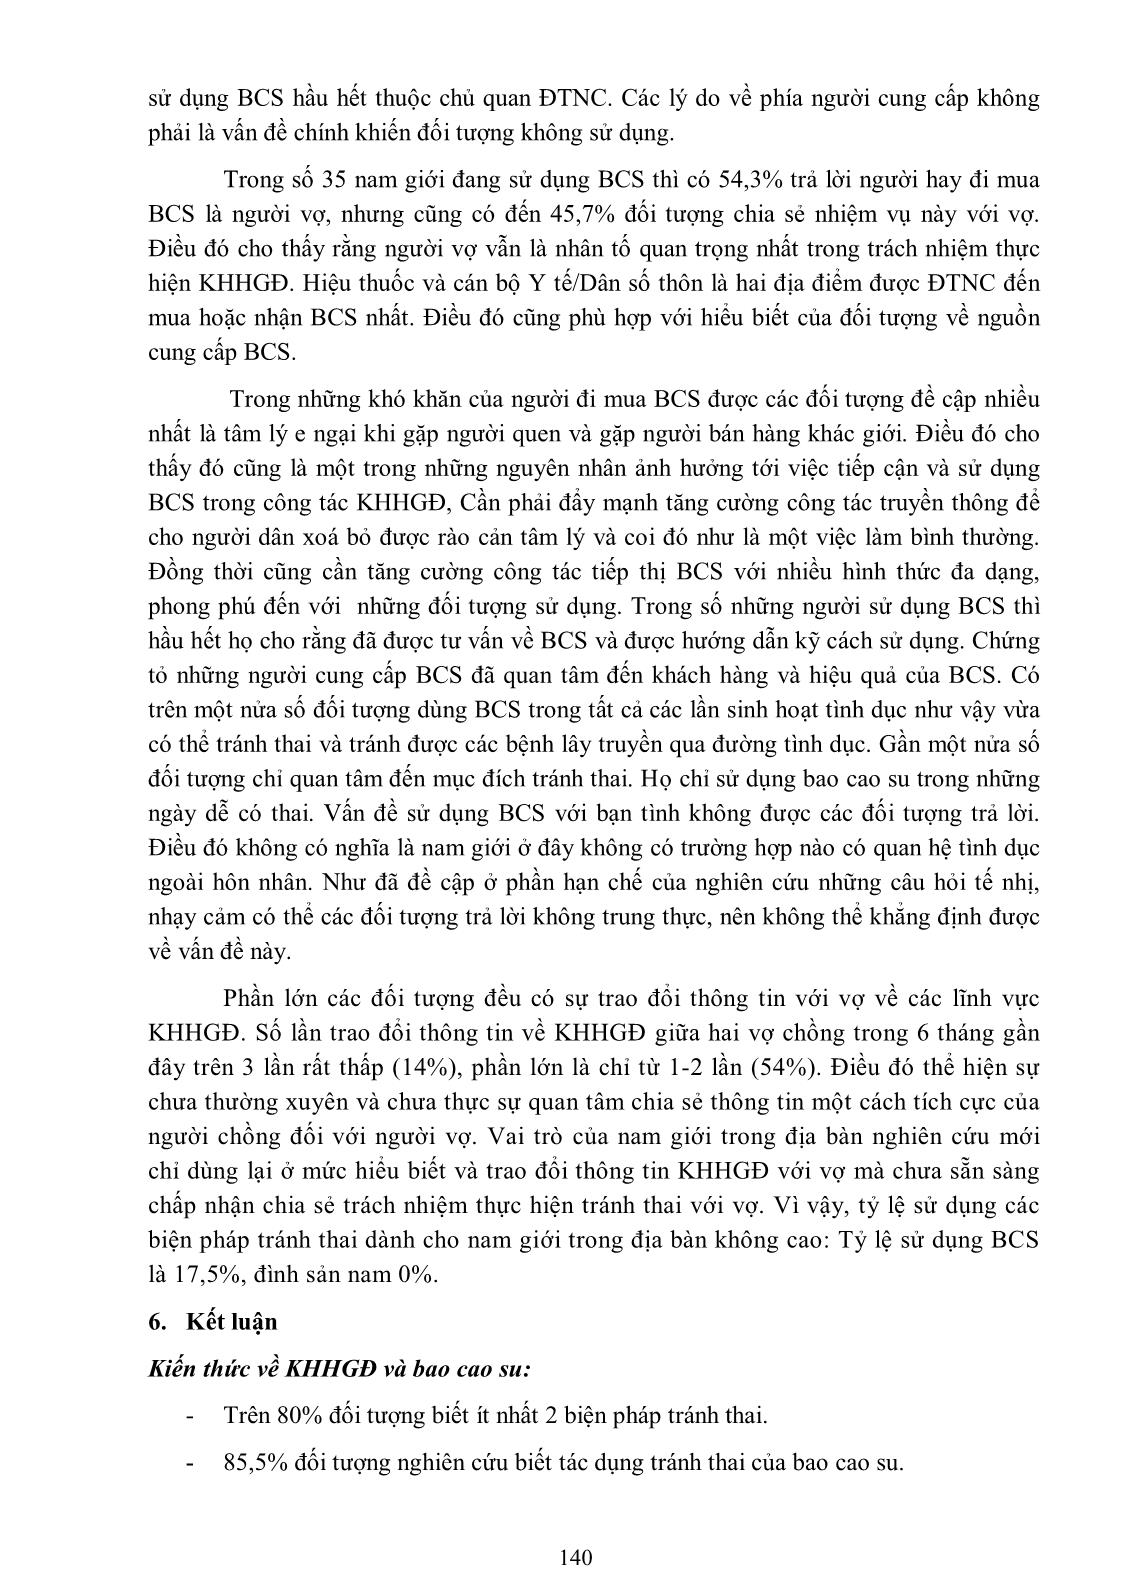 Mô tả kiến thức, thái độ và thực hành sử dụng bao cao su trong kế hoạch hóa gia đình của nam giới có vợ tại xã Thượng Kiệm, huyện Kim Sơn, tỉnh Ninh Bình năm 2013 trang 10